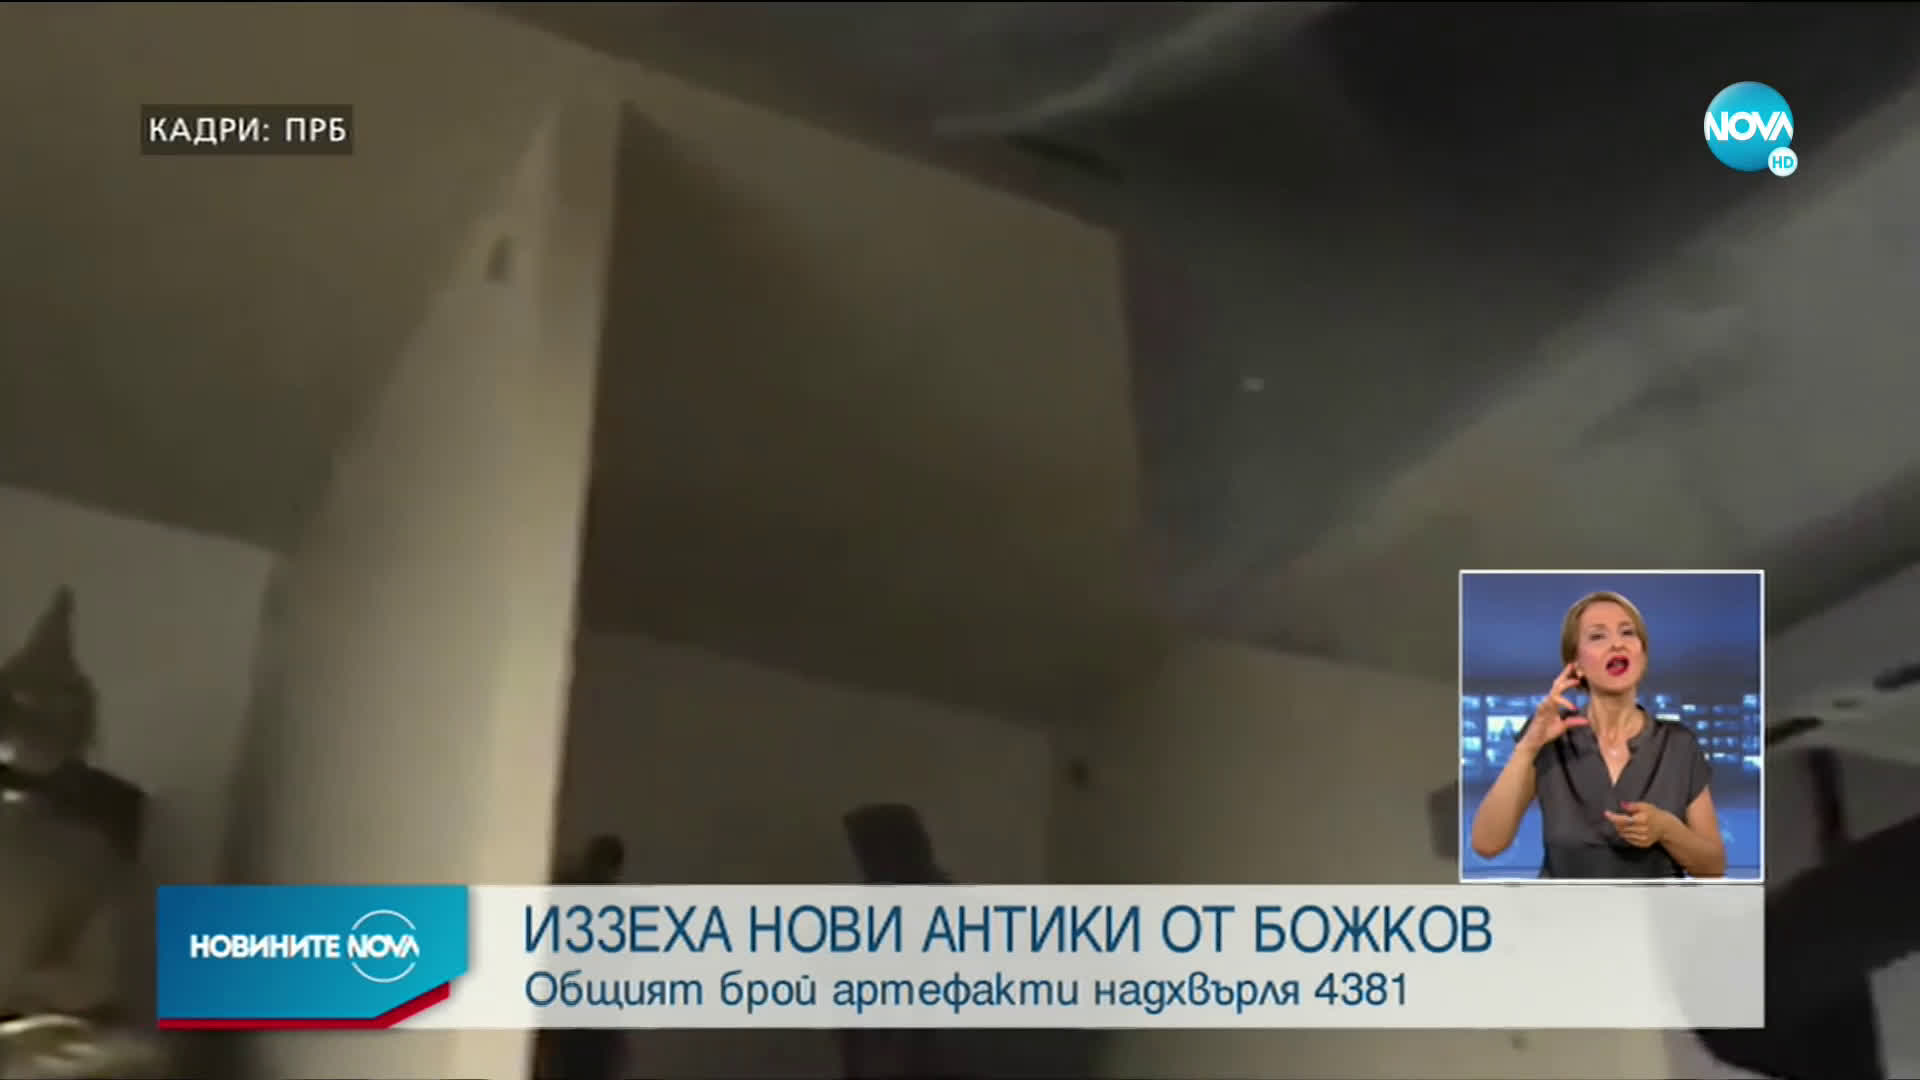 Над 4300 са иззетите предмети от офиса на Васил Божков